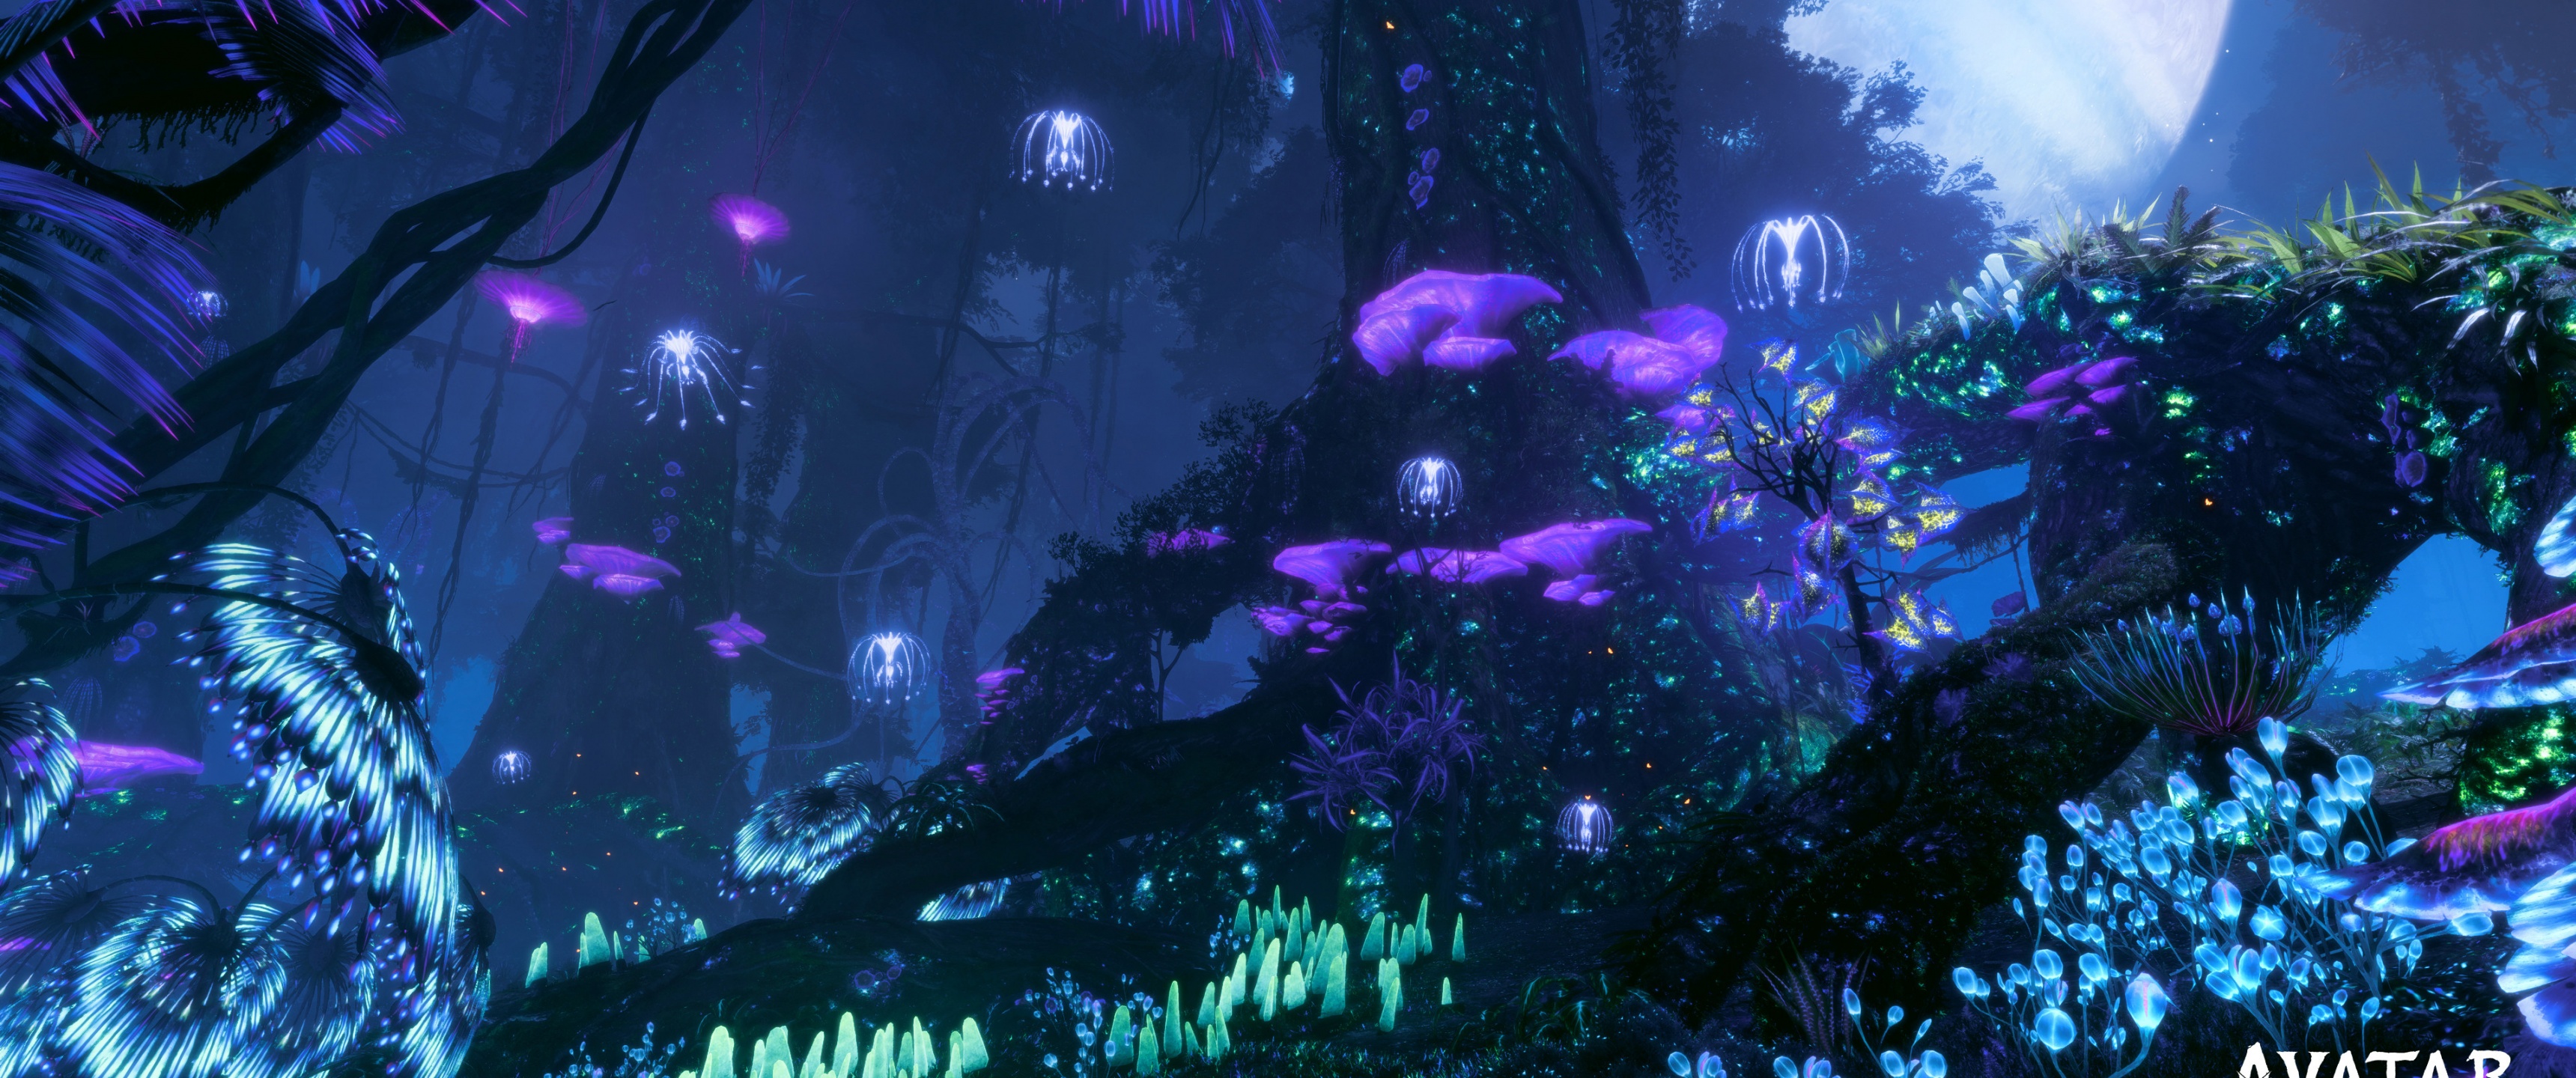 Avatar: Frontiers of Pandora Wallpaper 4K, 2022 Games, Amazon Luna